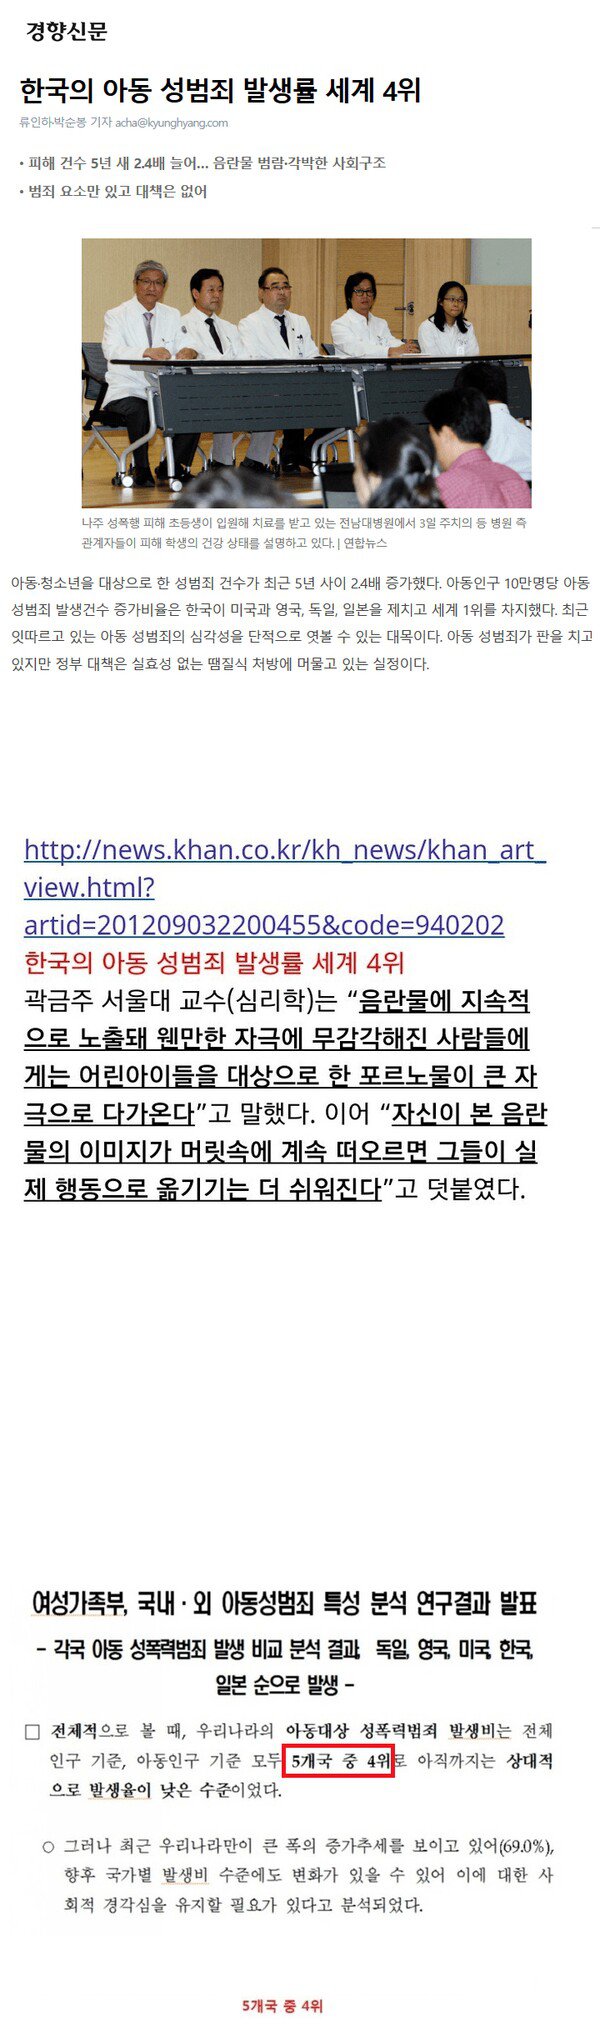 한국 아동성범죄 발생률 4위